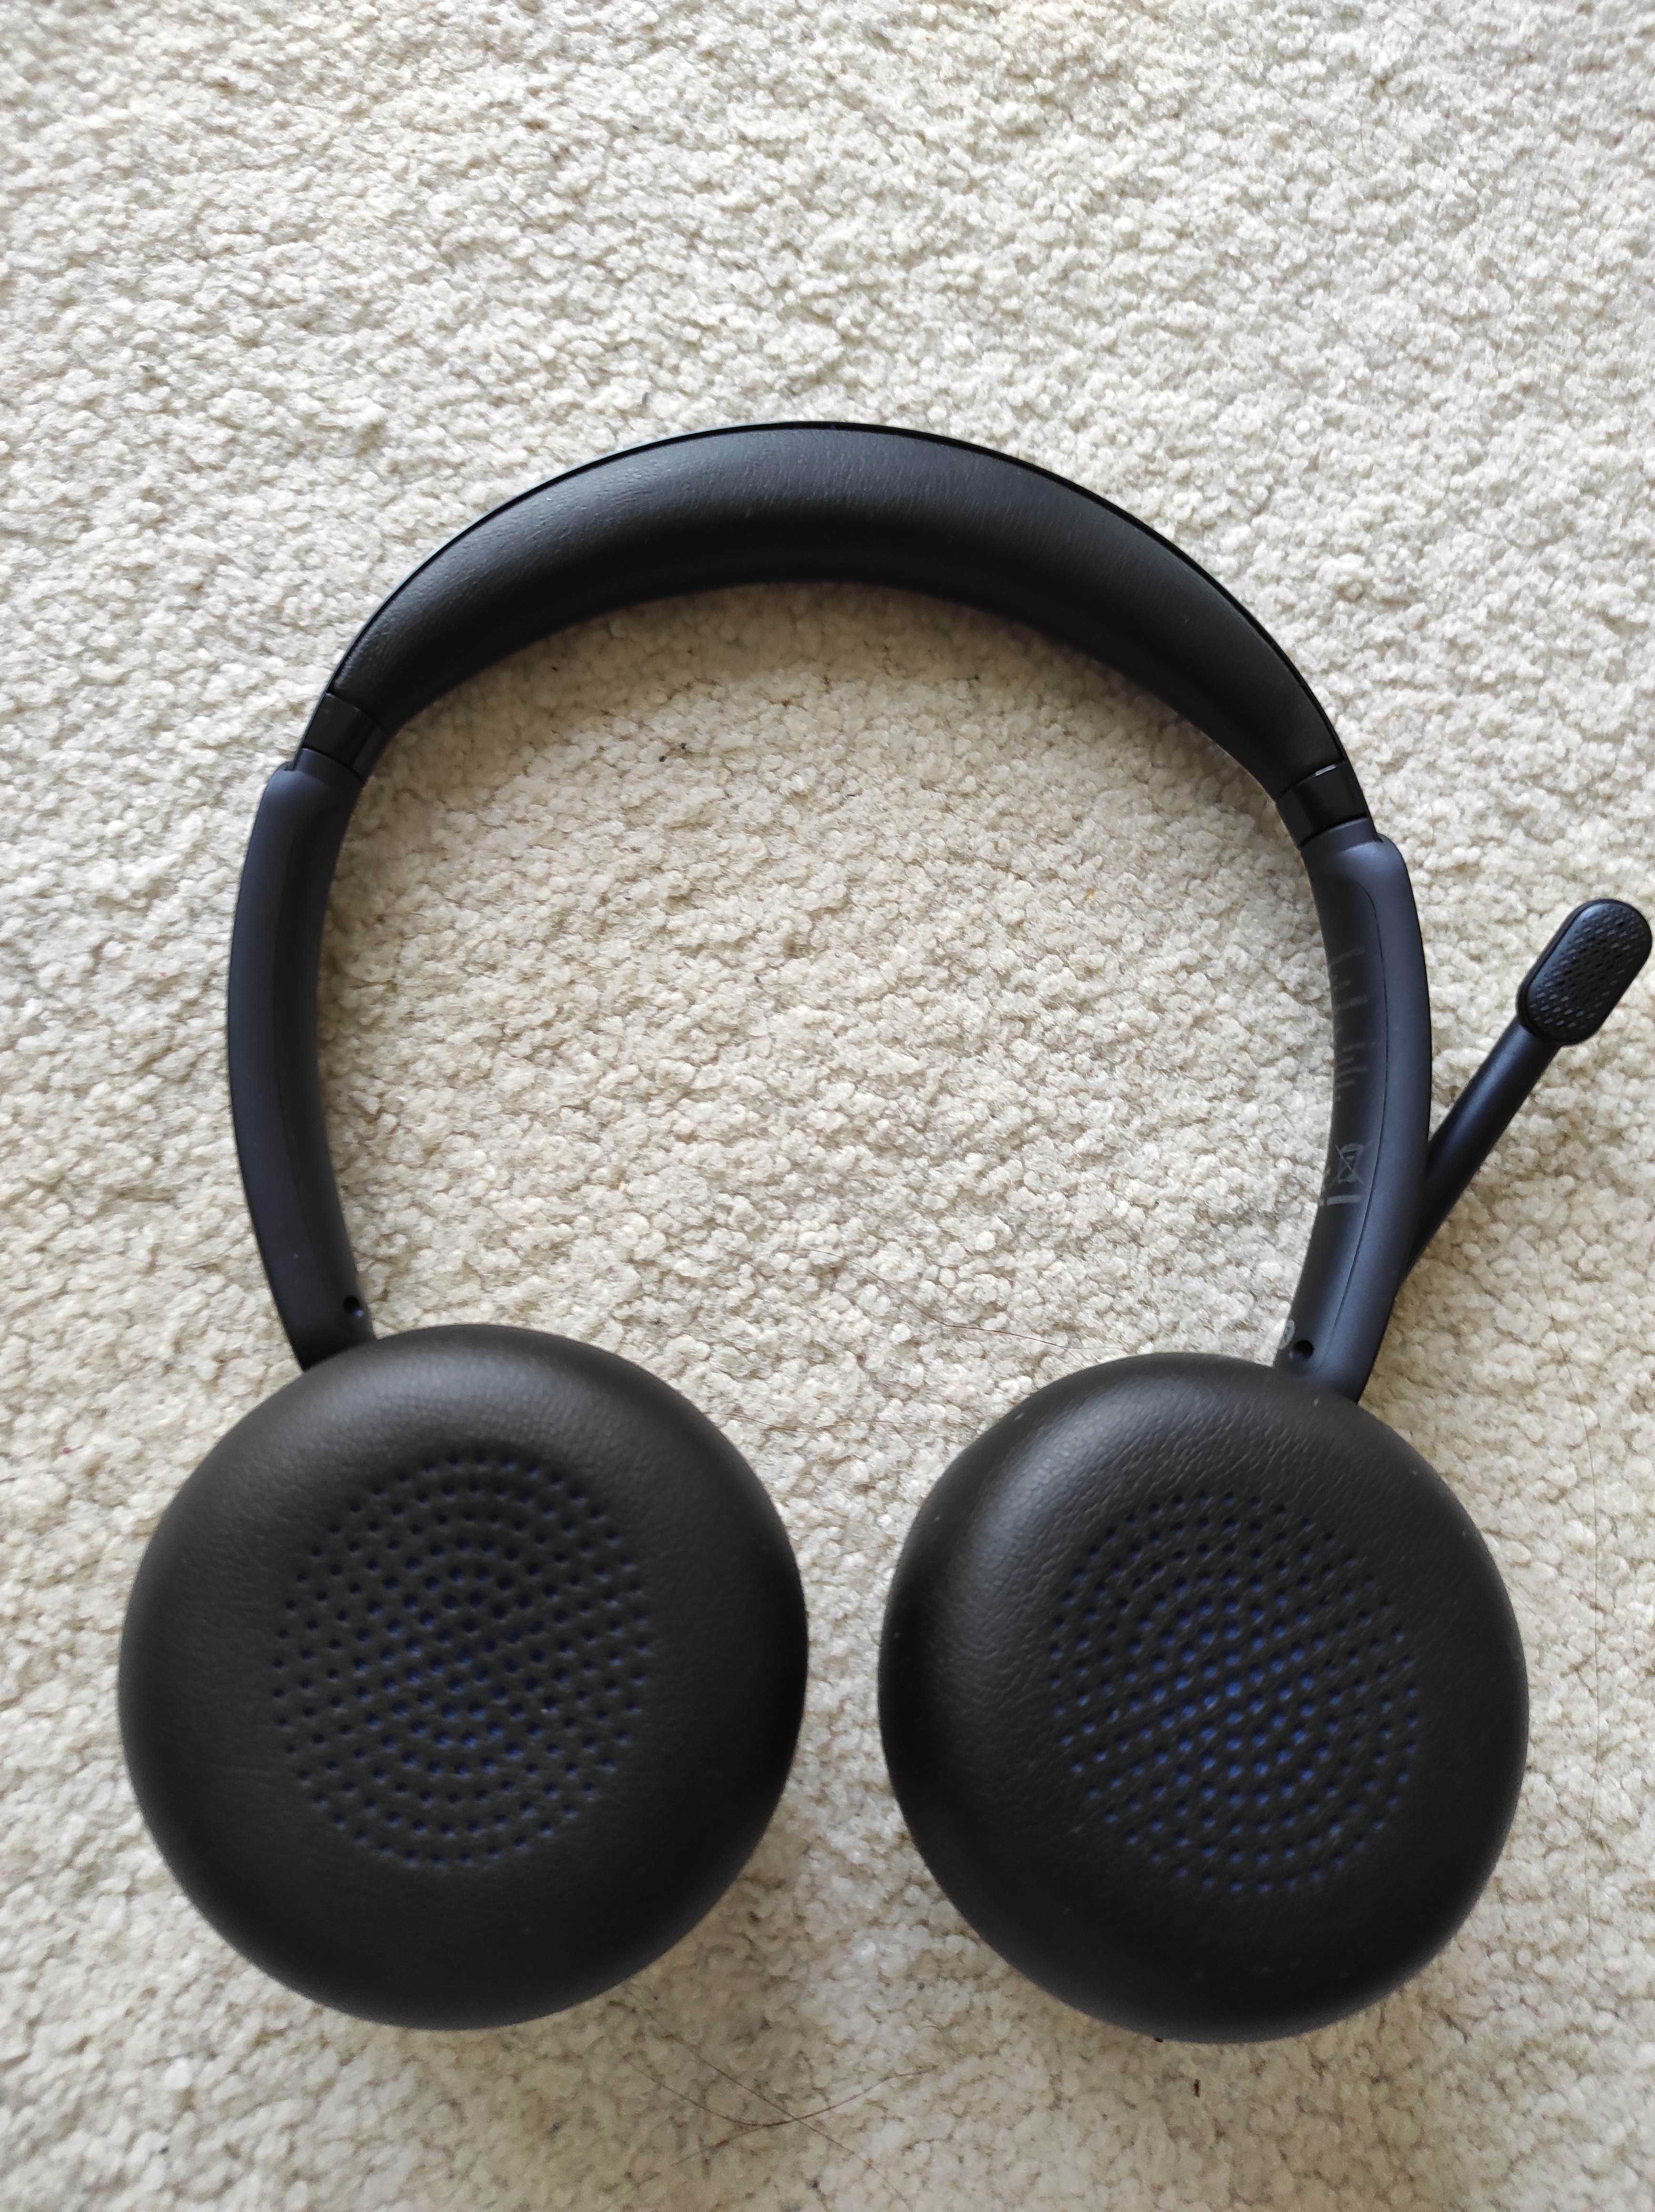 ANKER POWERCONF H700 zestaw słuchawkowy Bluetooth z mikrofonem